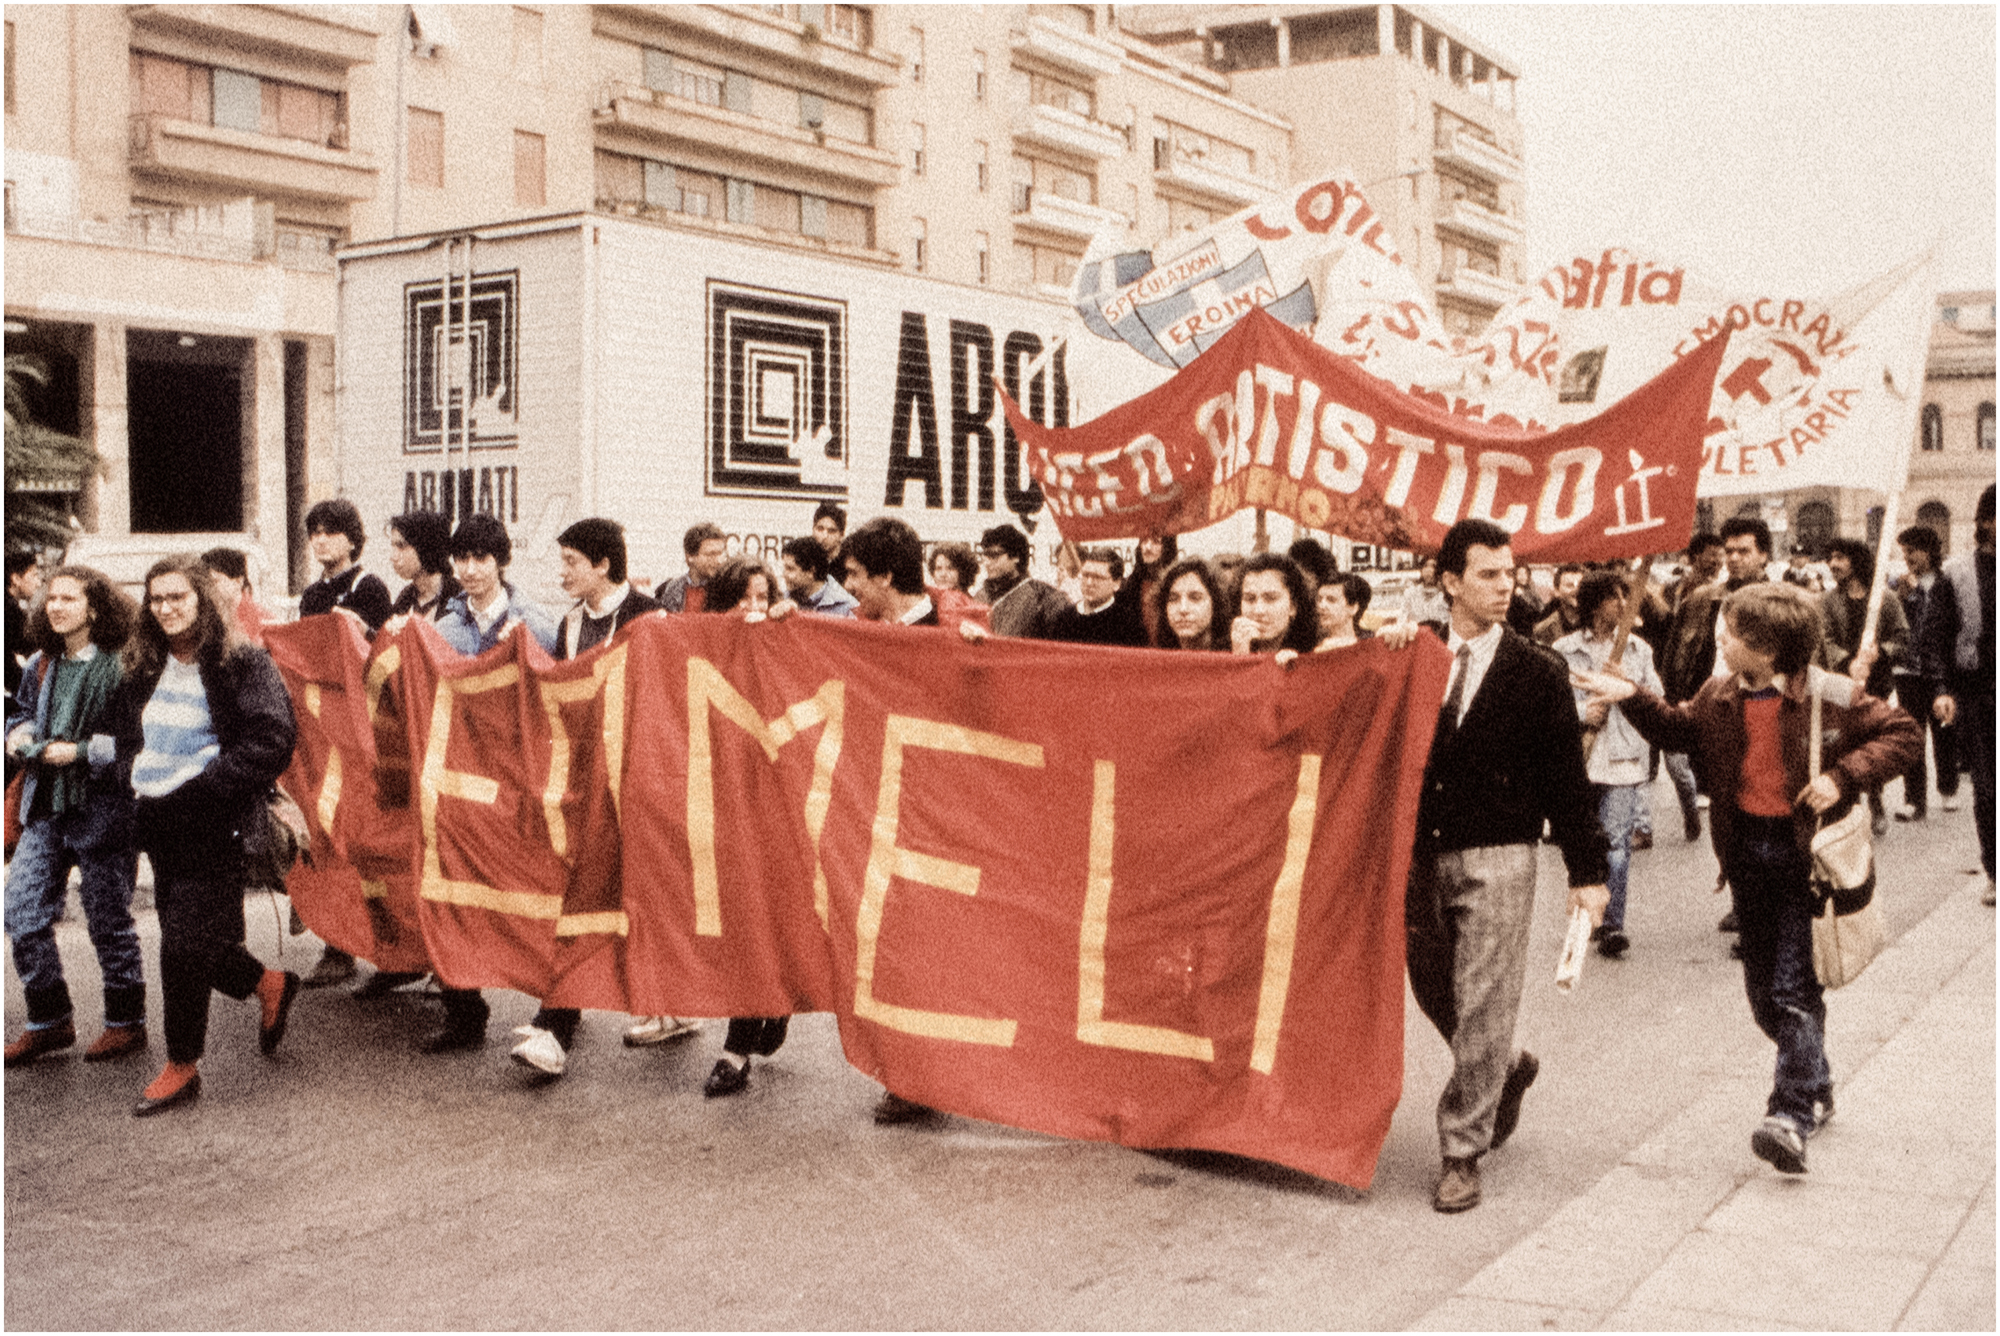 Palermo: manifestazione contro la mafia (Panorama Mese, maggio 1985)